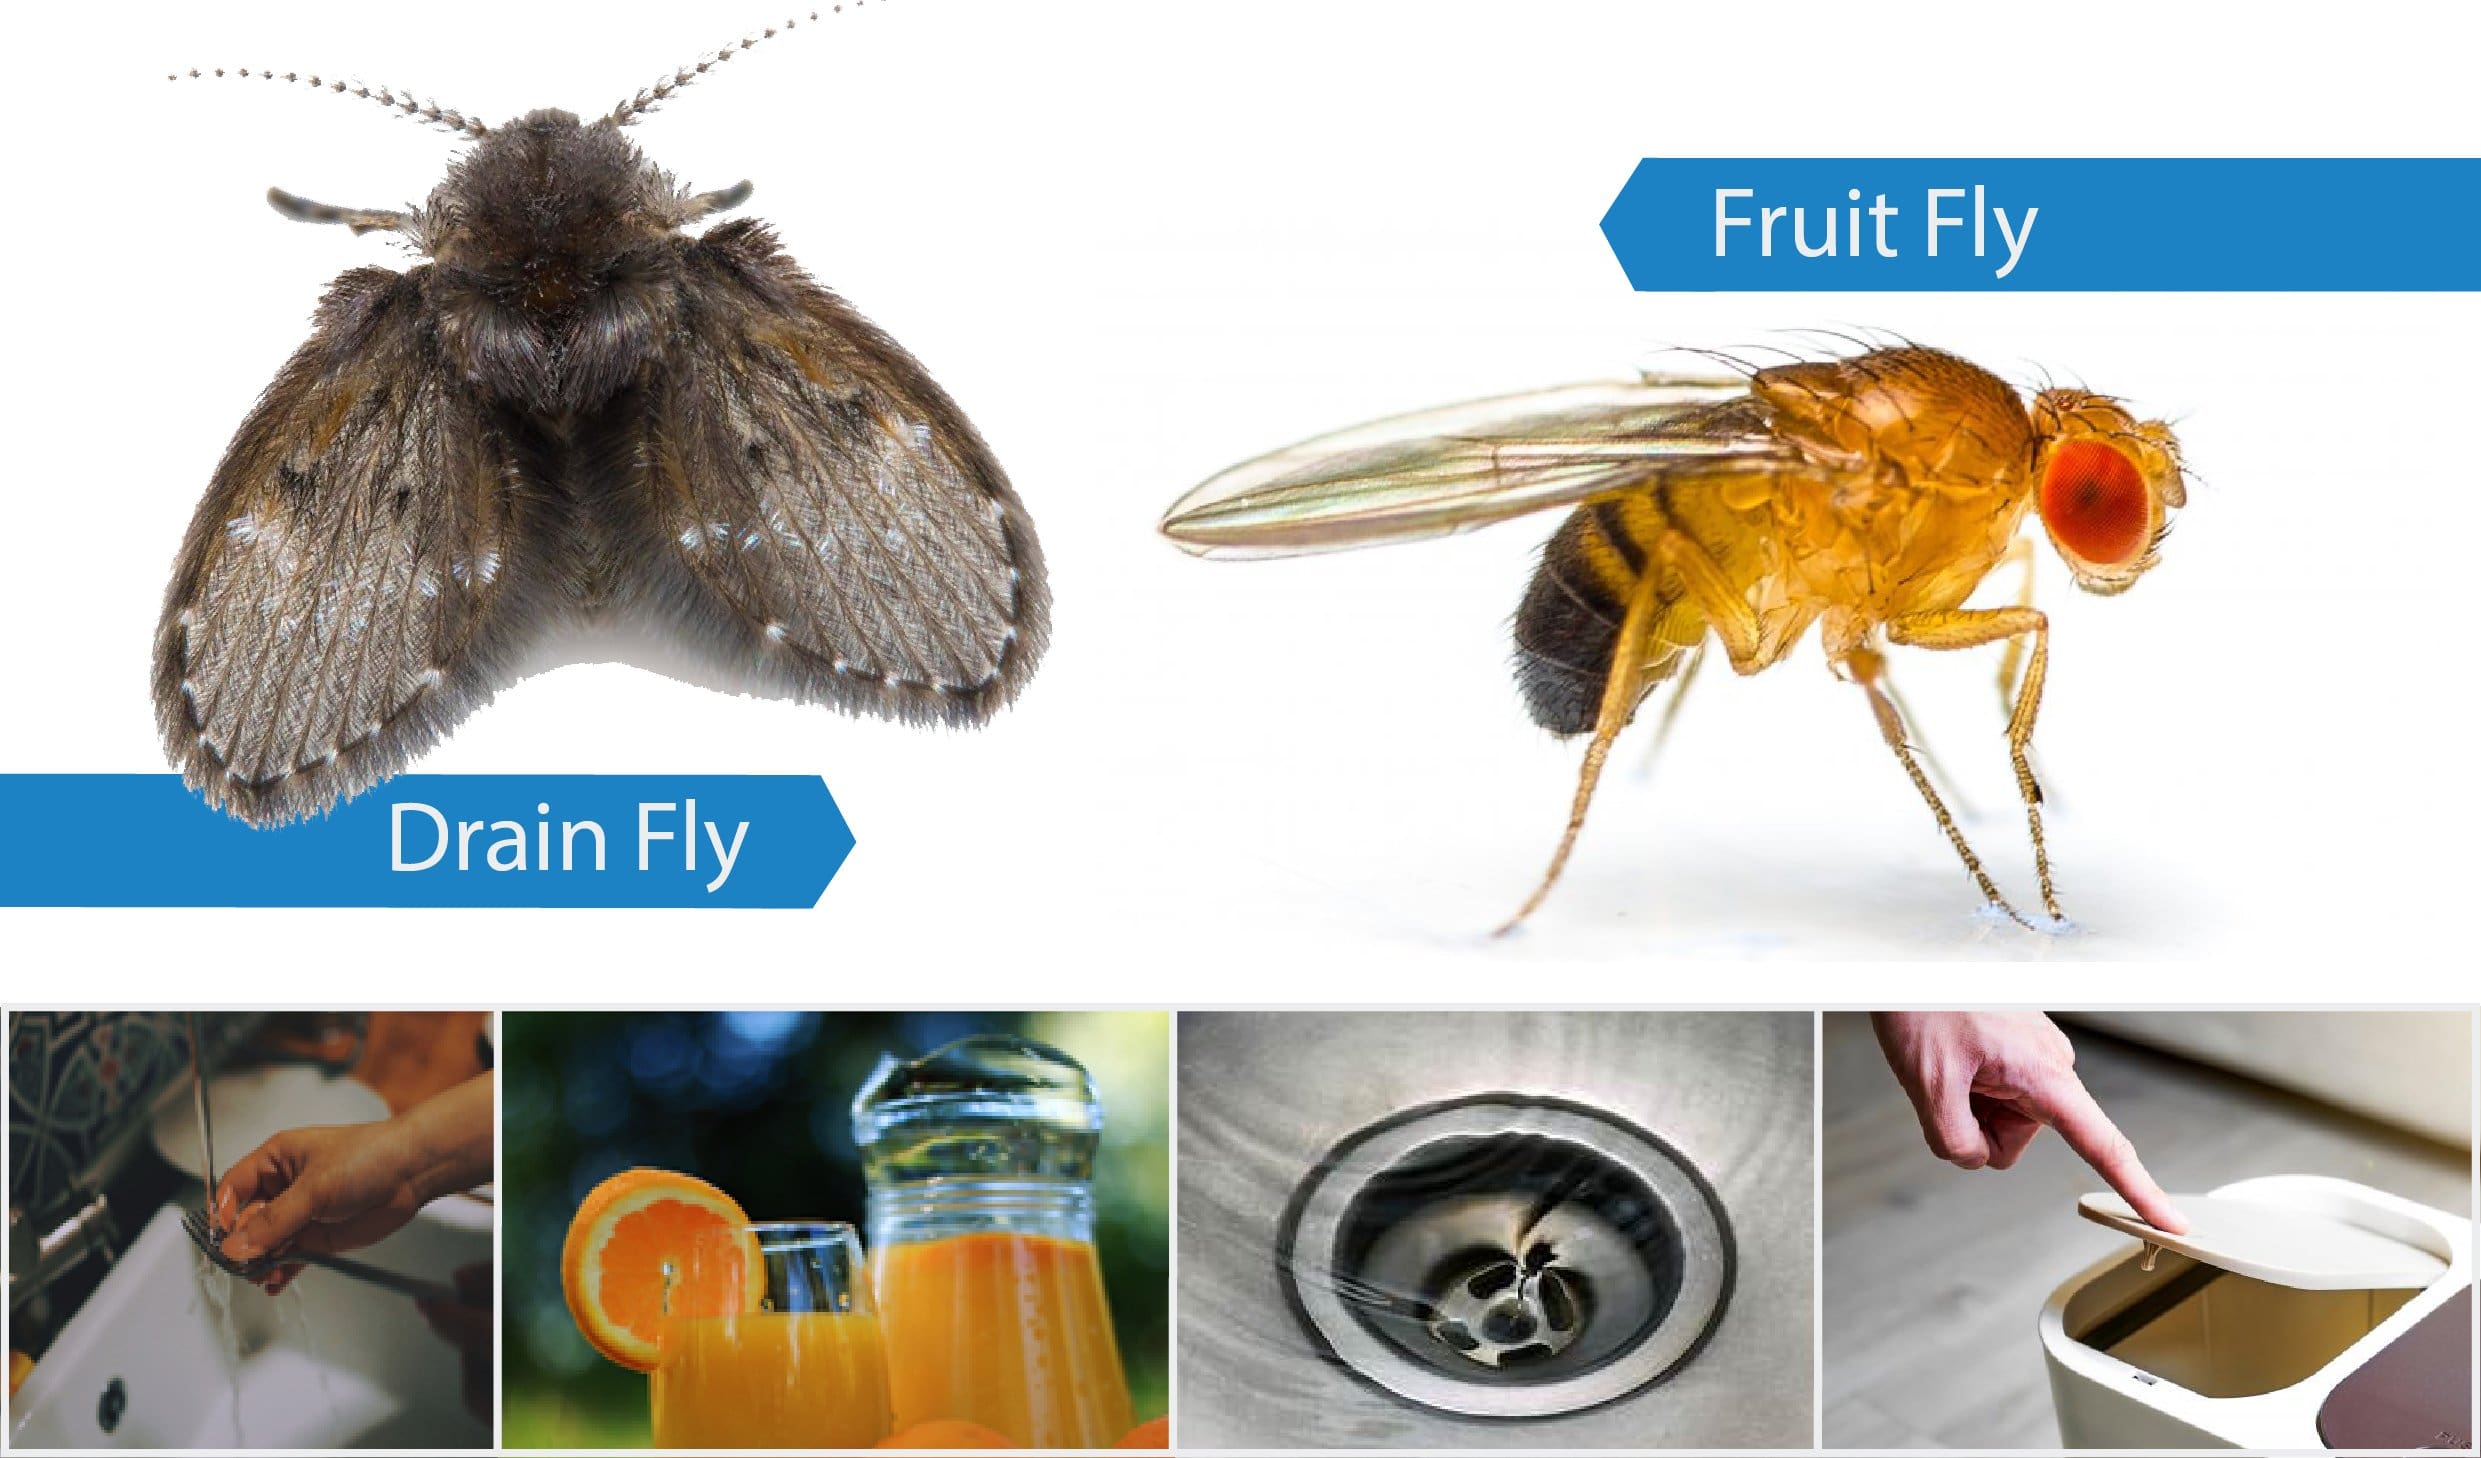 https://pestcontrolservices.co.uk/wp-content/uploads/2021/12/Fruit-vs-drain-fly-01.jpg